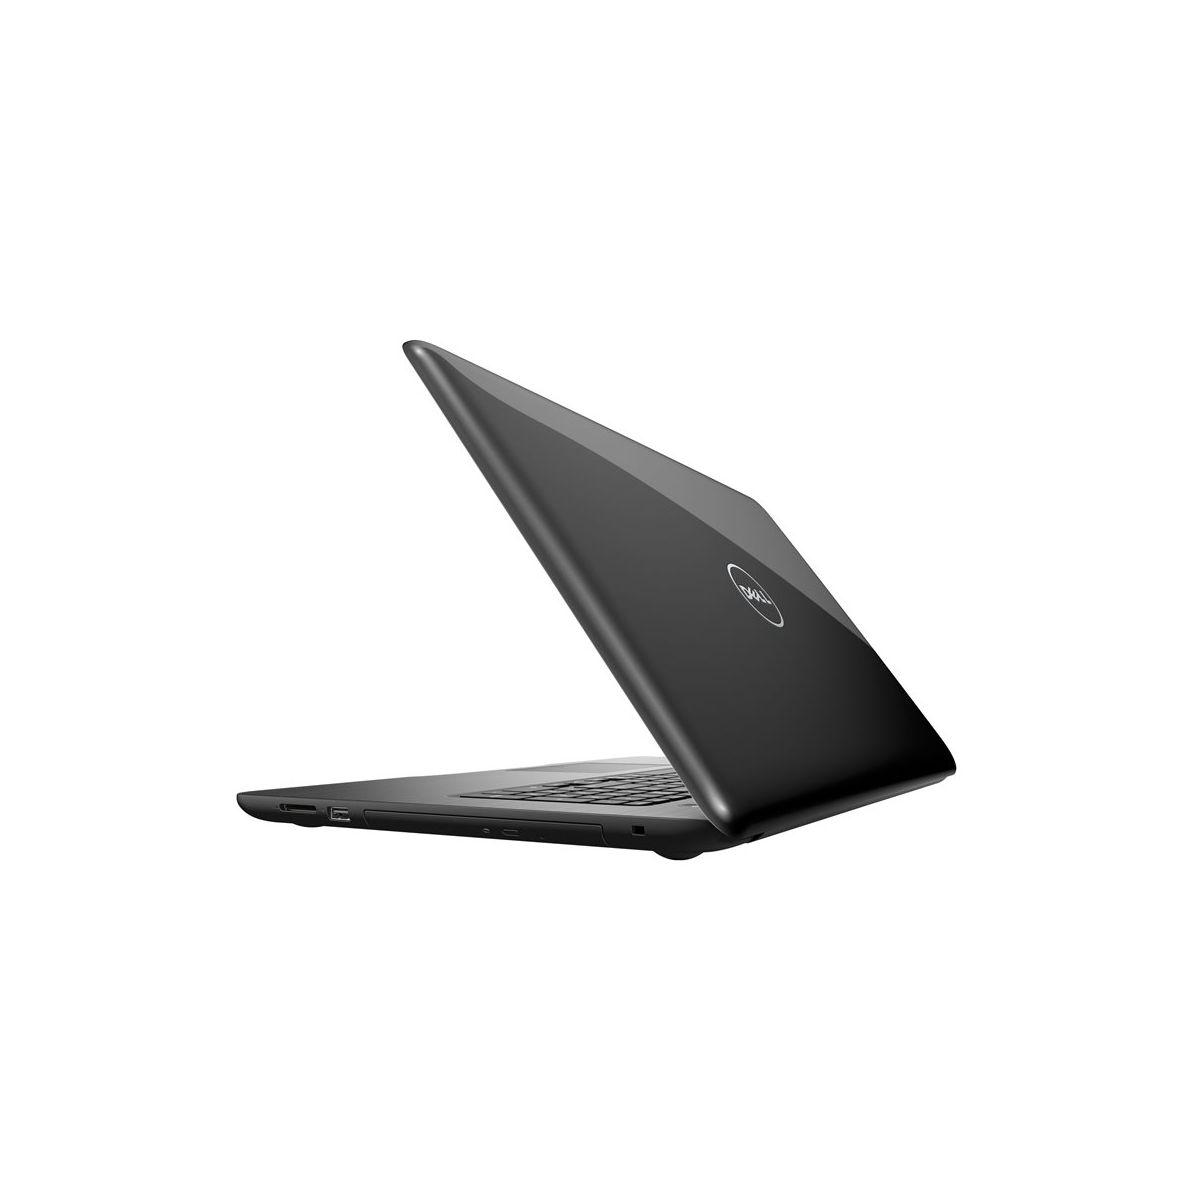 Dell Inspiron 17 5767-Y2K12 : les meilleurs prix par LaptopSpirit